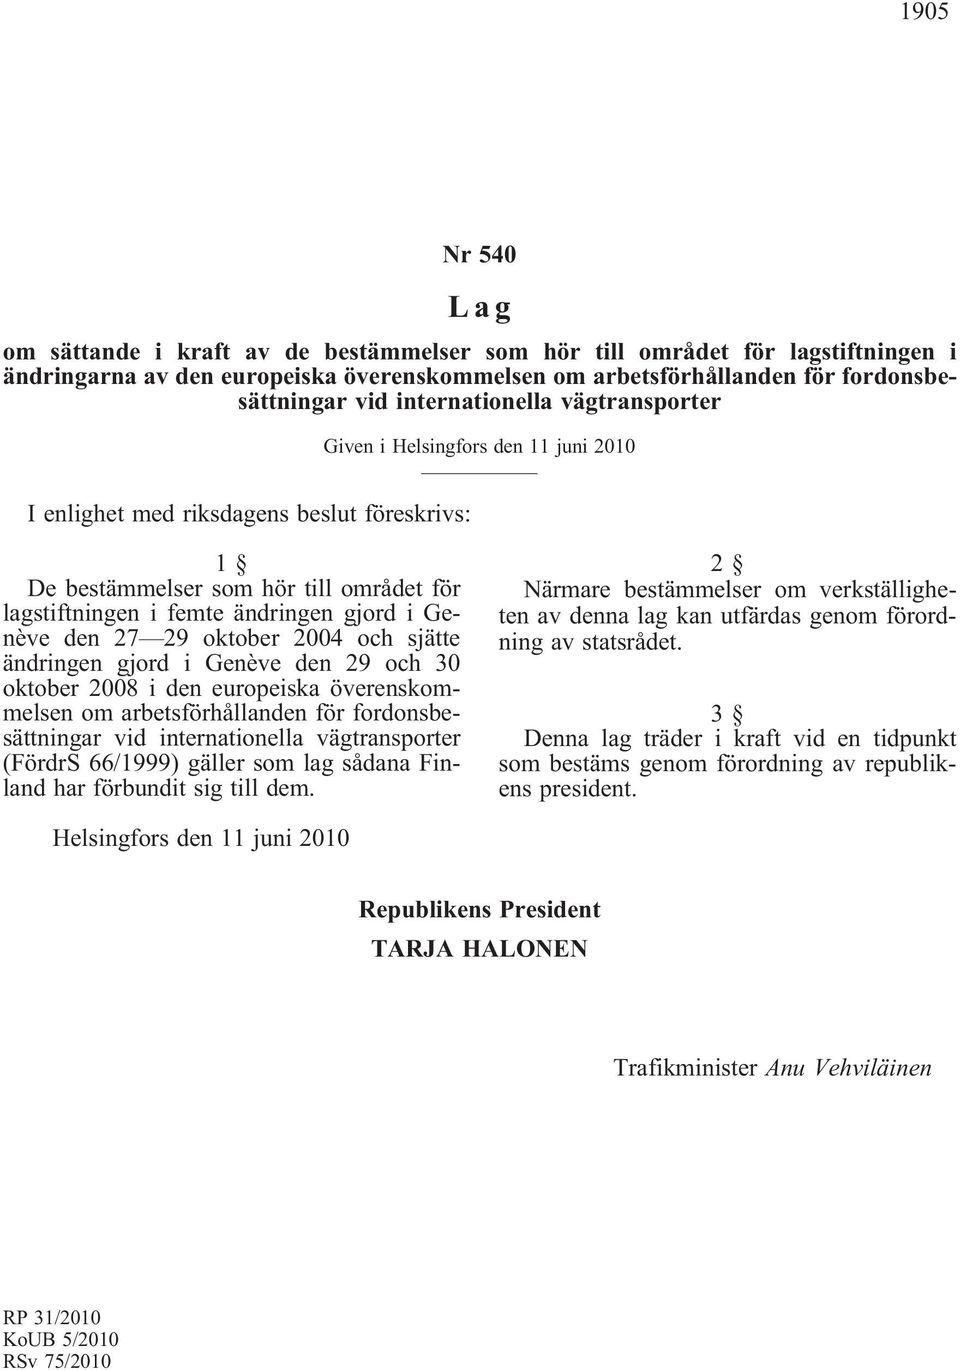 Genève den 27 29 oktober 2004 och sjätte ändringen gjord i Genève den 29 och 30 oktober 2008 i den europeiska överenskommelsen om arbetsförhållanden för fordonsbesättningar vid internationella